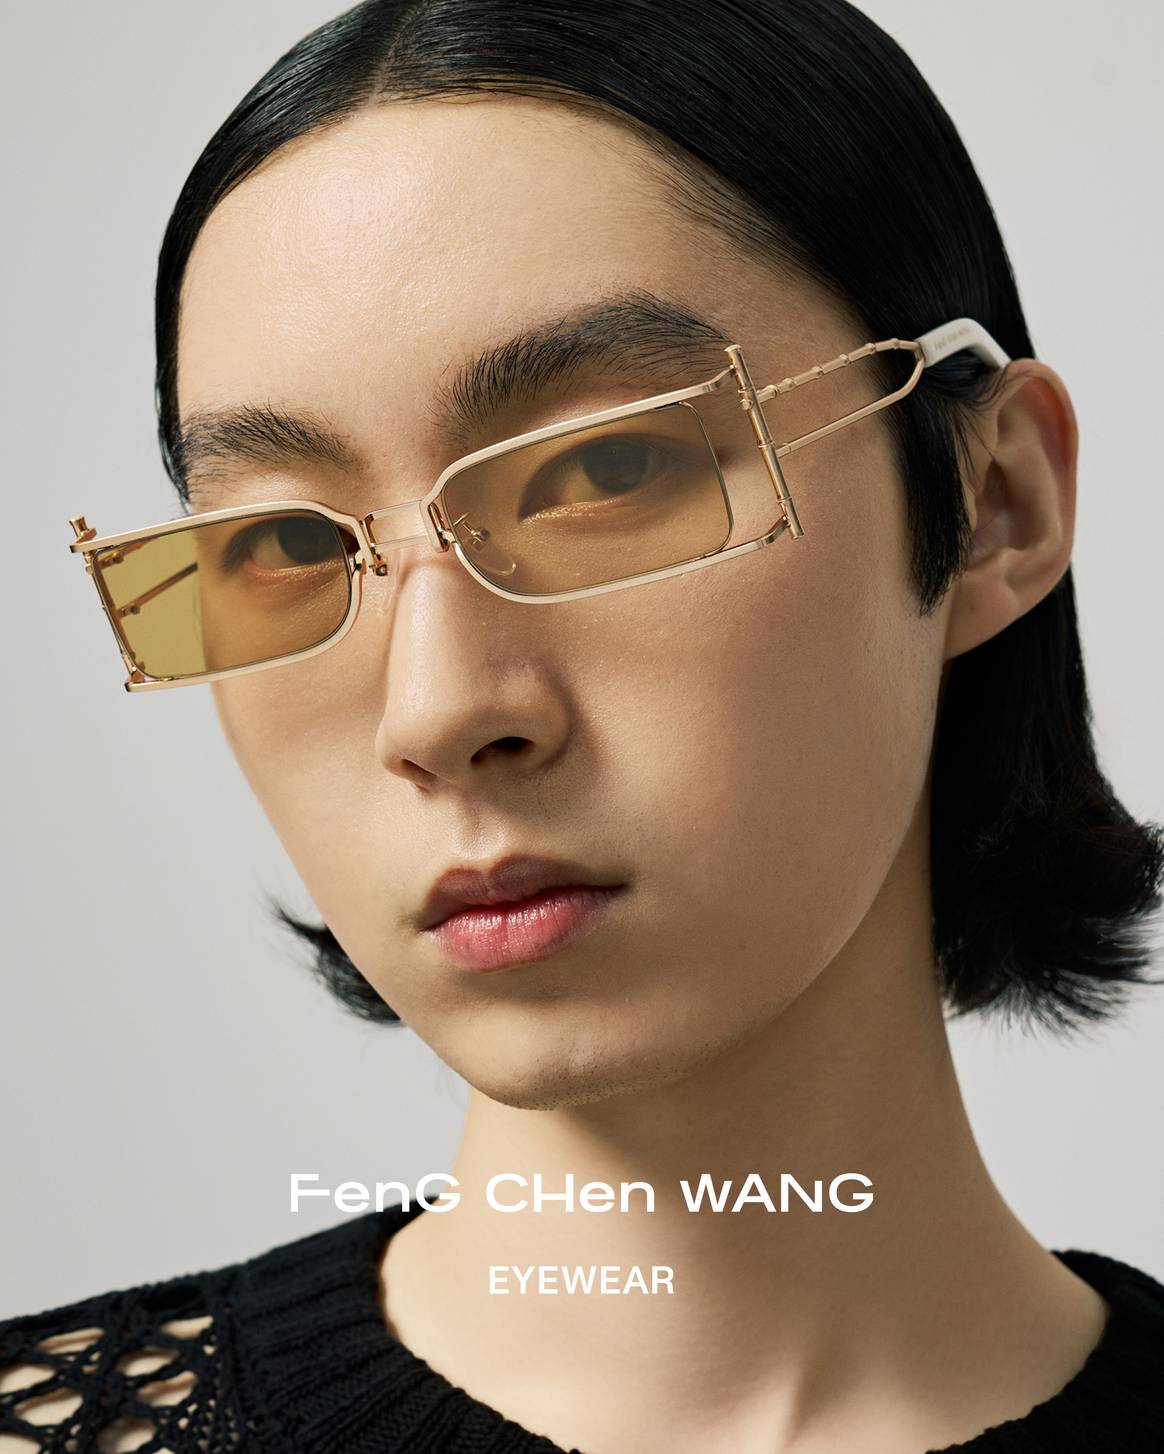 Feng Chen Wang eyewear